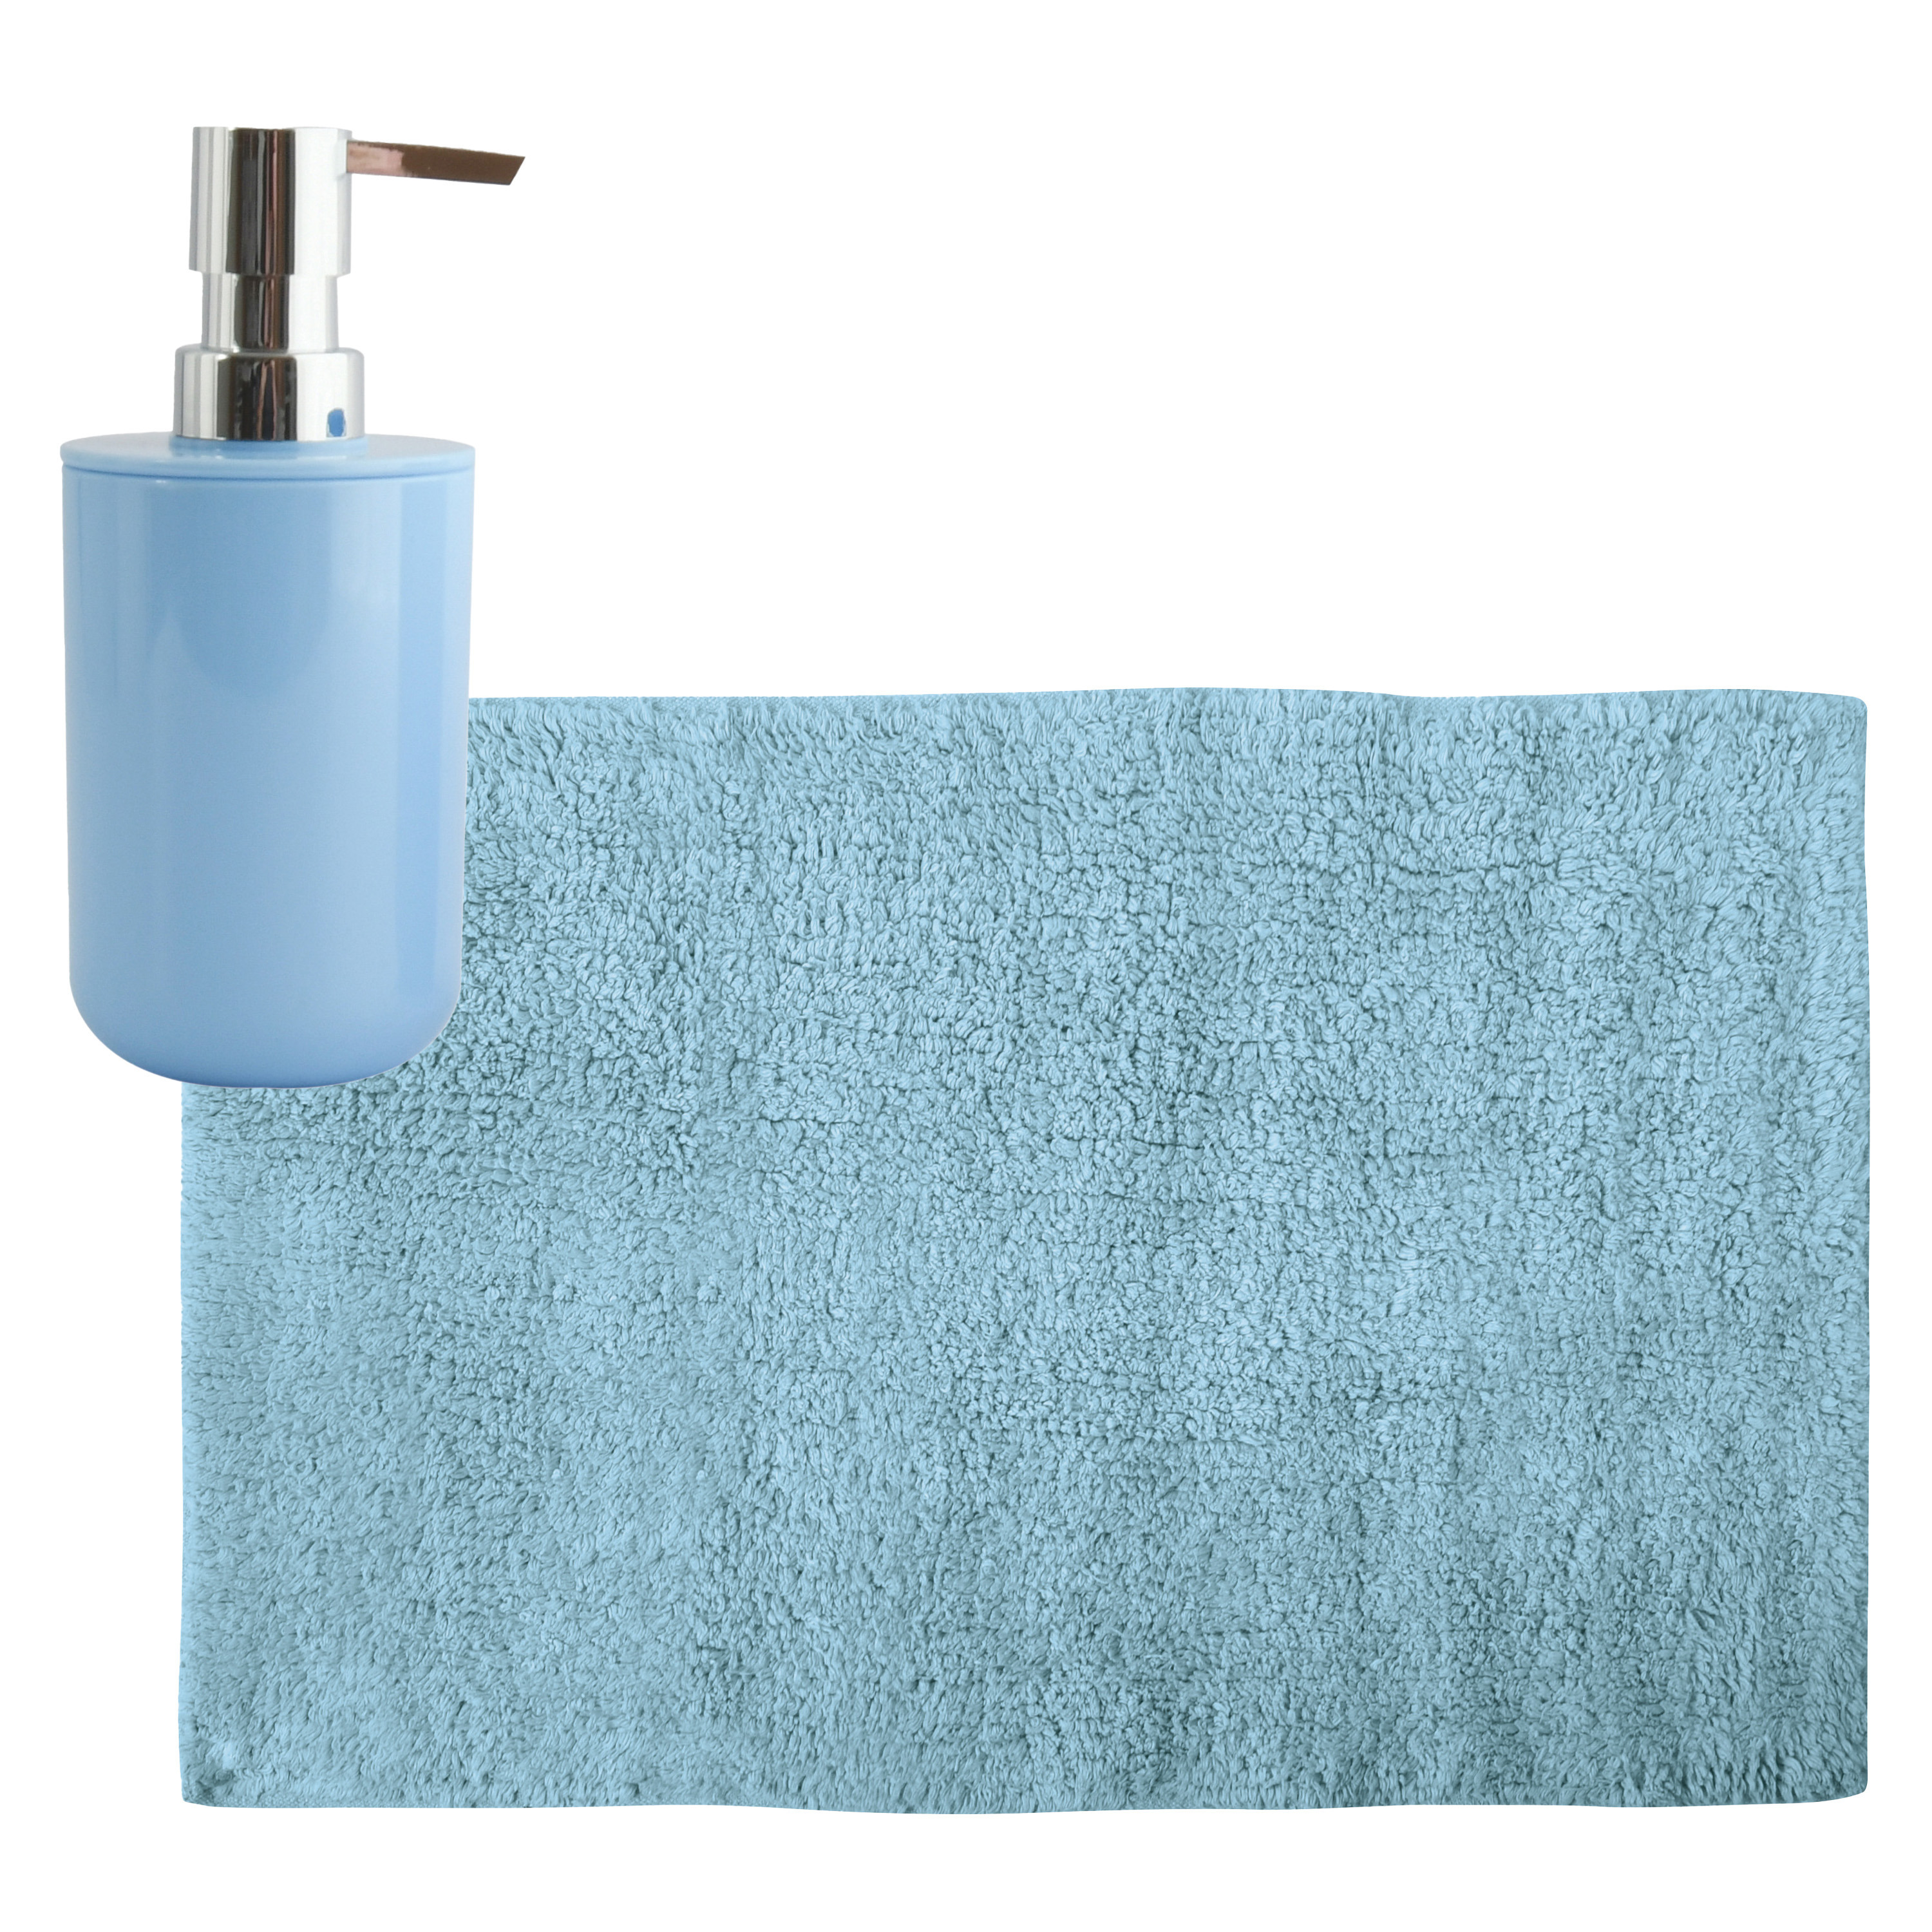 MSV badkamer droogloop mat-tapijt 40 x 60 cm met zelfde kleur zeeppompje 260 ml lichtblauw